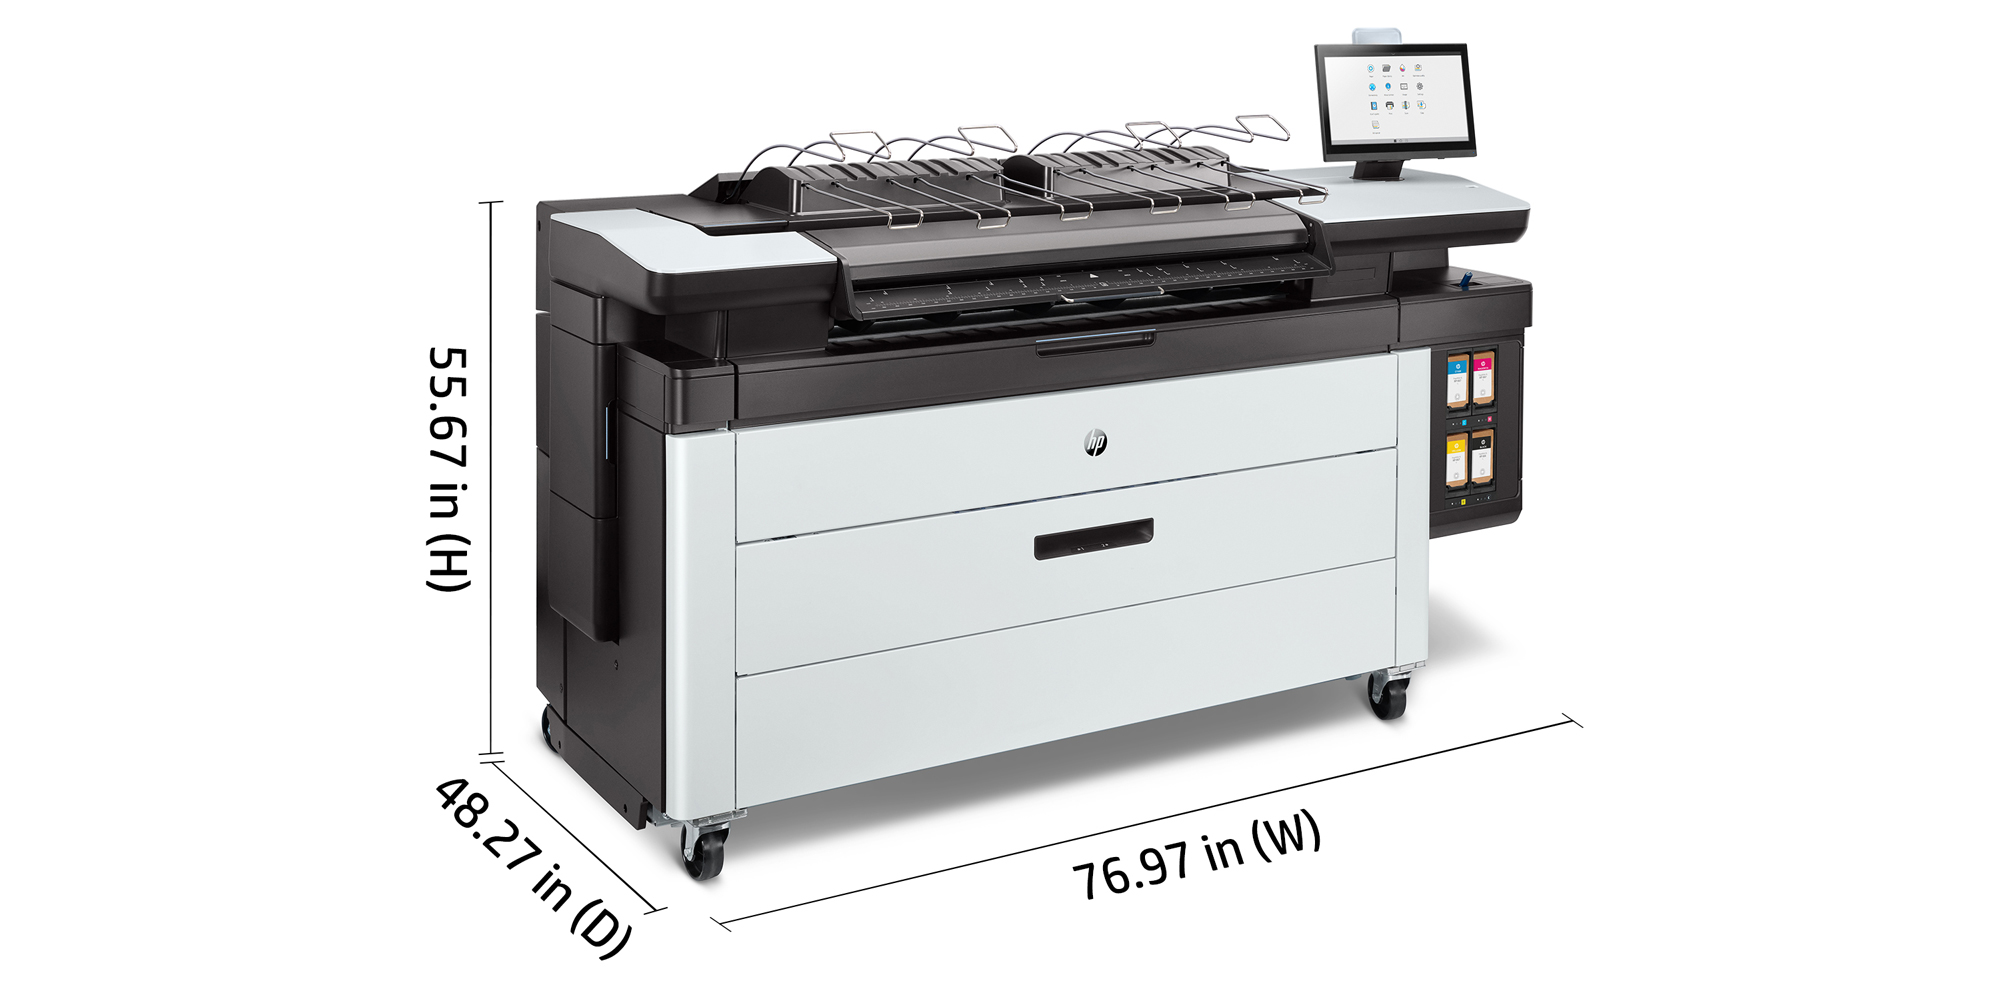 PageWide XL 8200 Printer